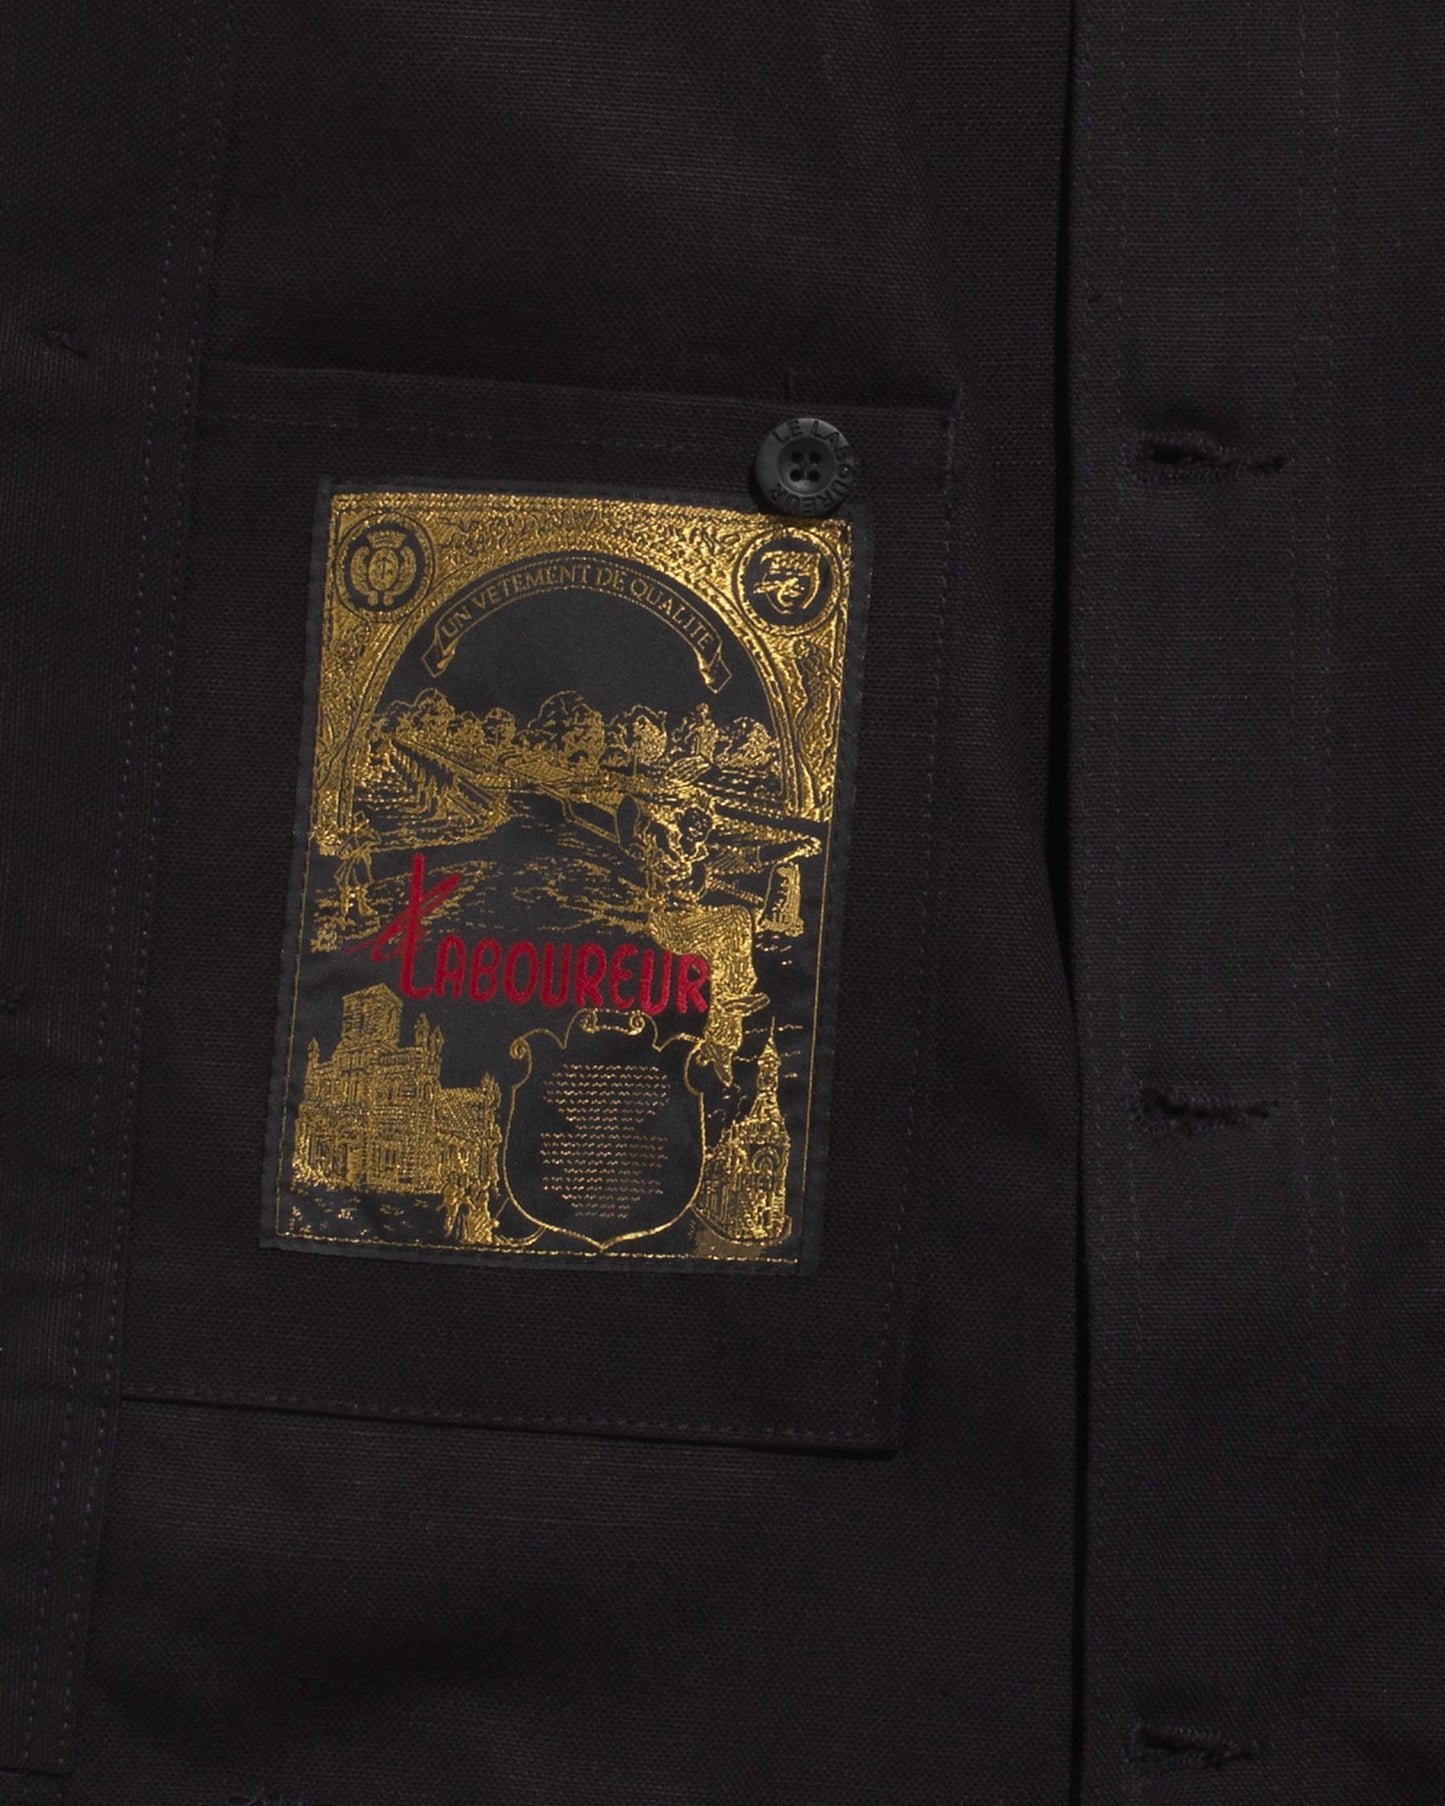 Le Laboureur black linen/cotton work jacket